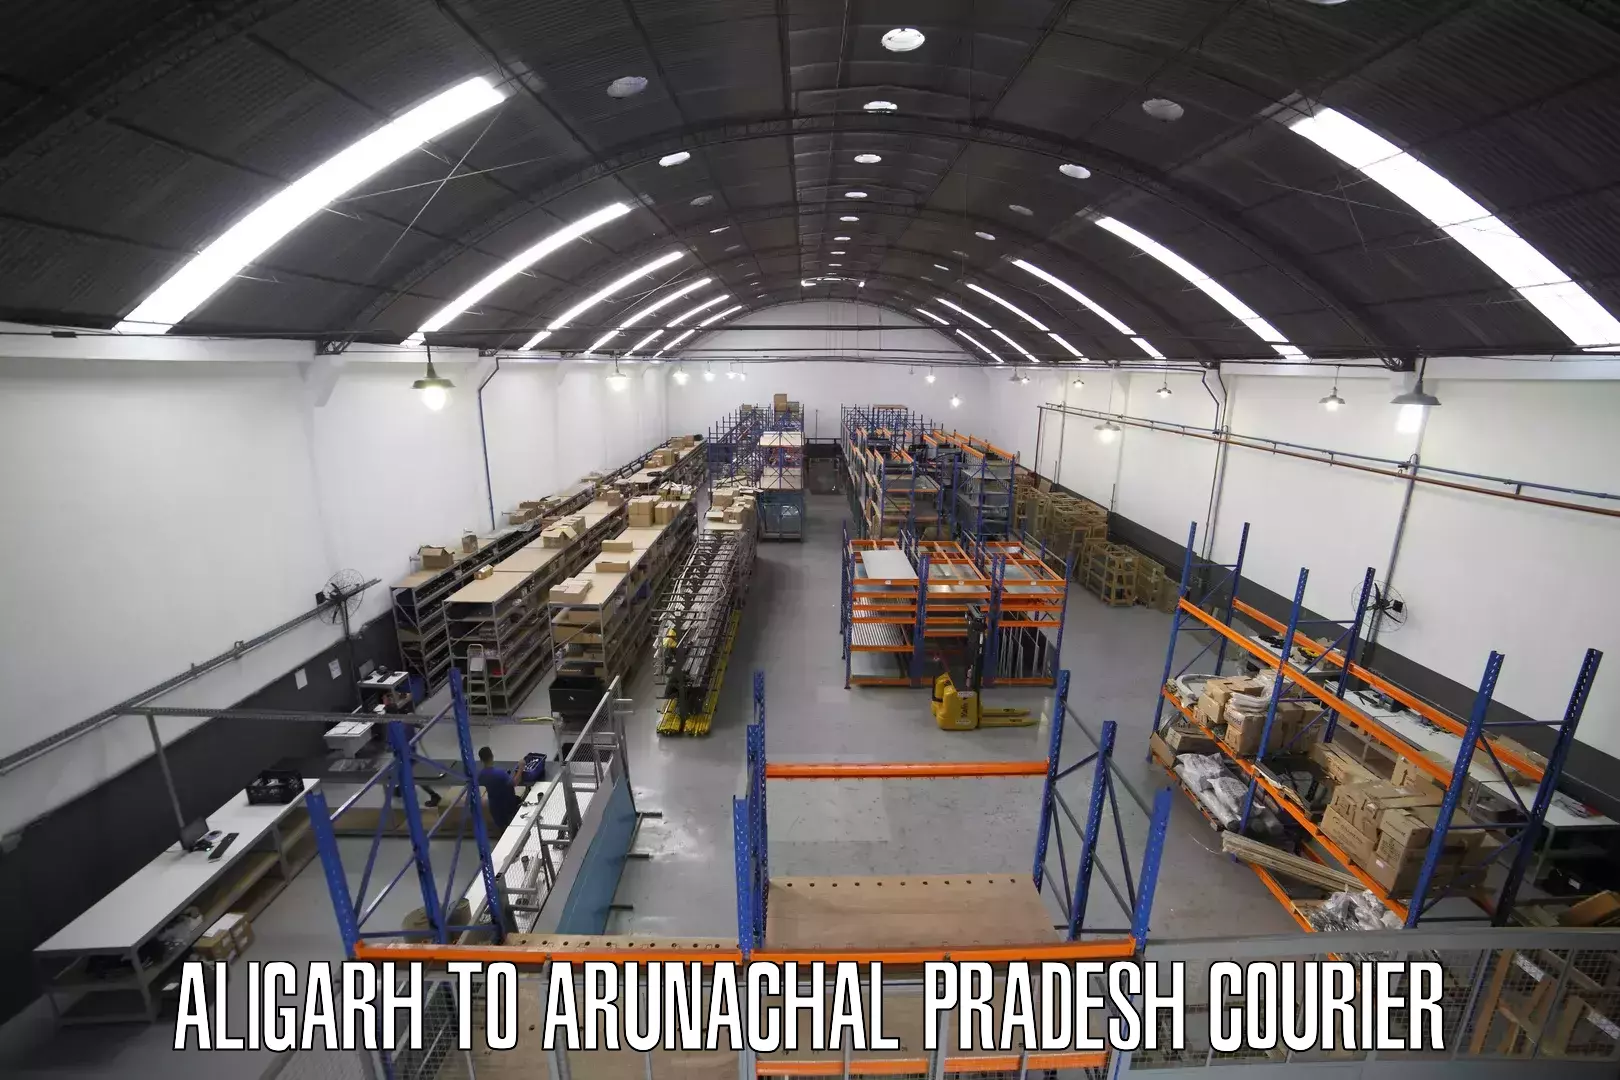 Multi-national courier services Aligarh to Arunachal Pradesh